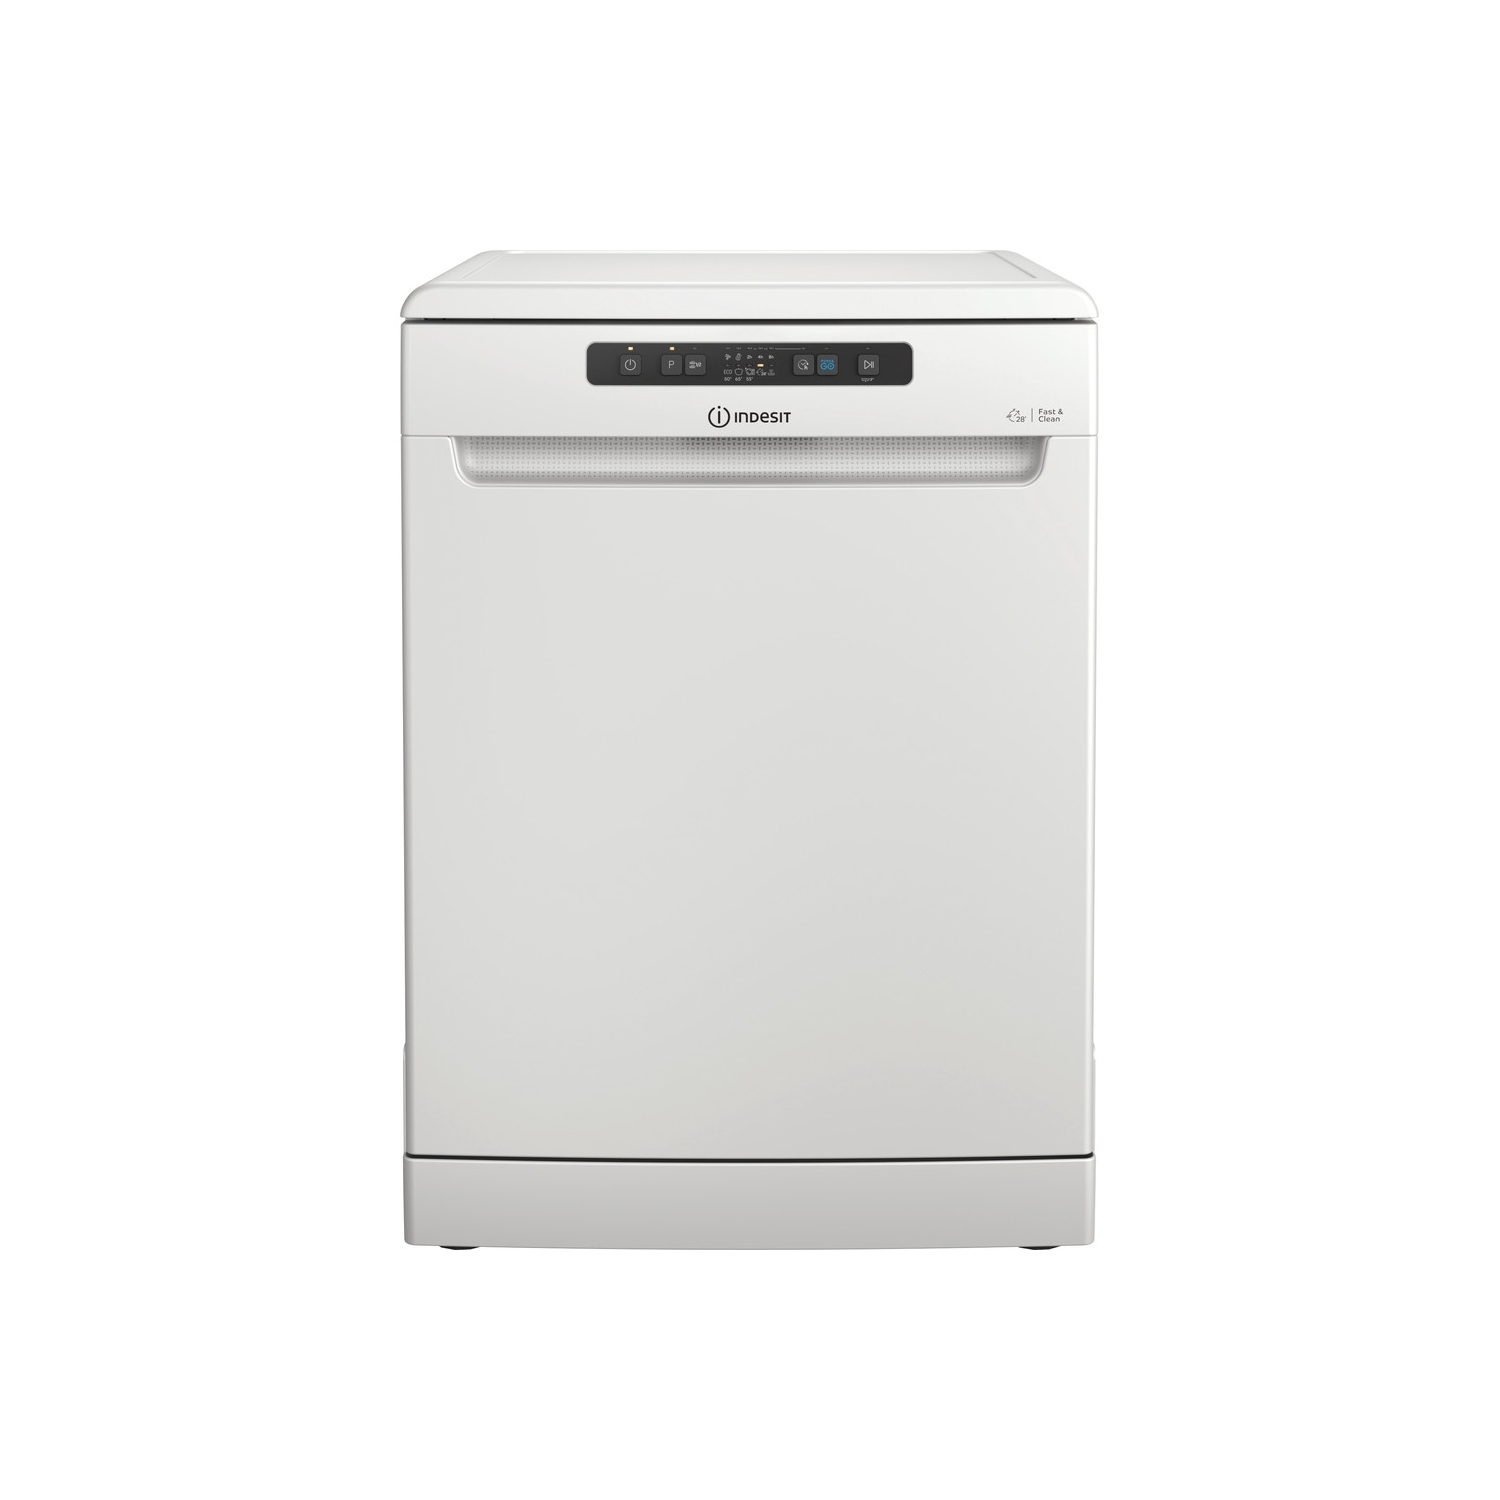 Indesit DFC2B16UK Full Size Dishwasher - White - 13 Place Settings - 1